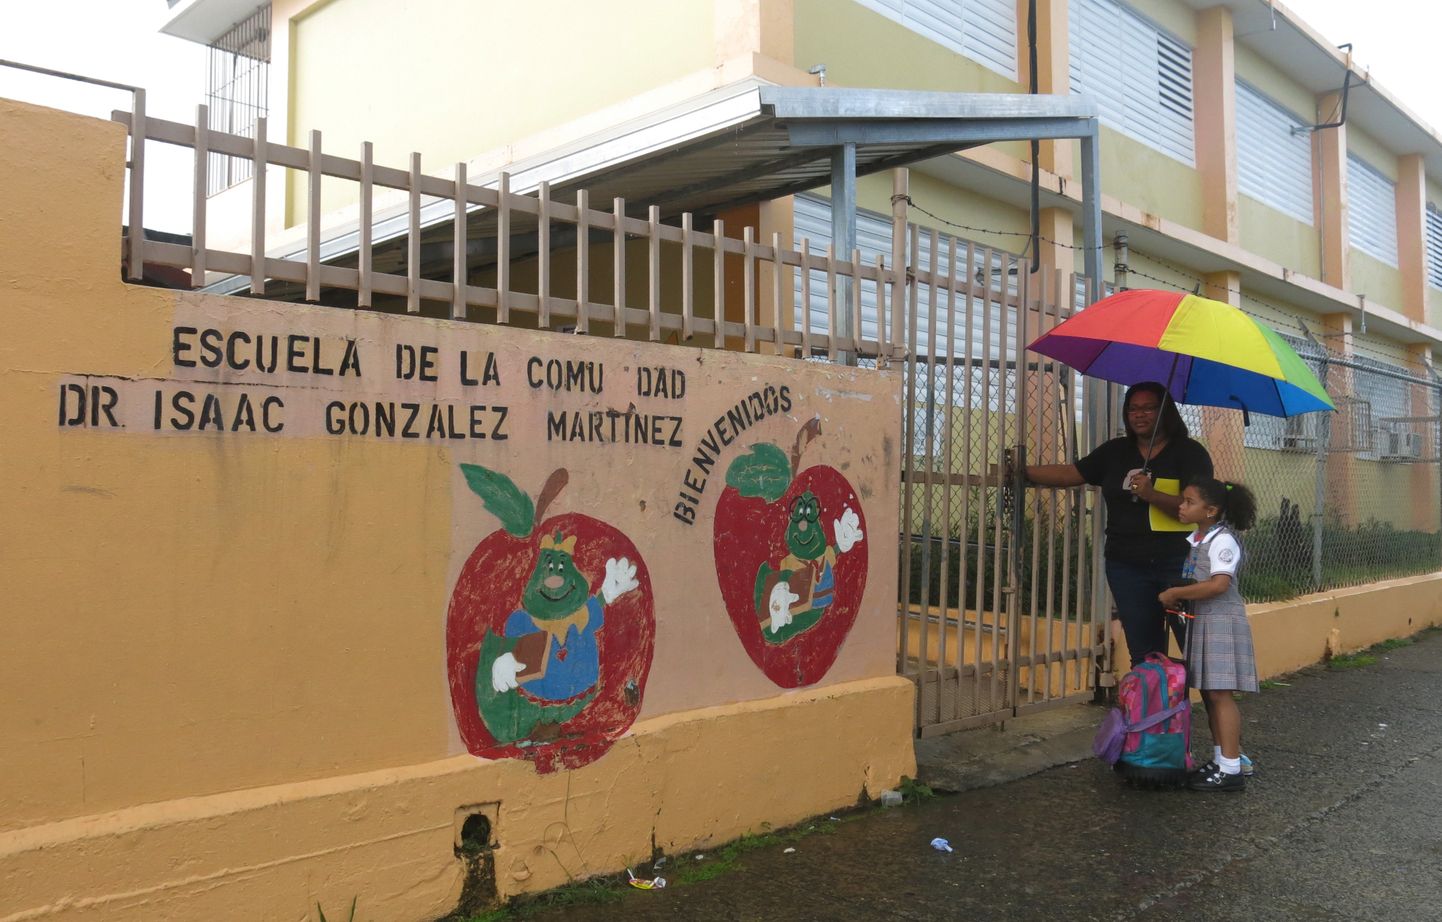 Dr. Isaac Gonzalez Martinez'i kool on üks suletavatest koolidest.